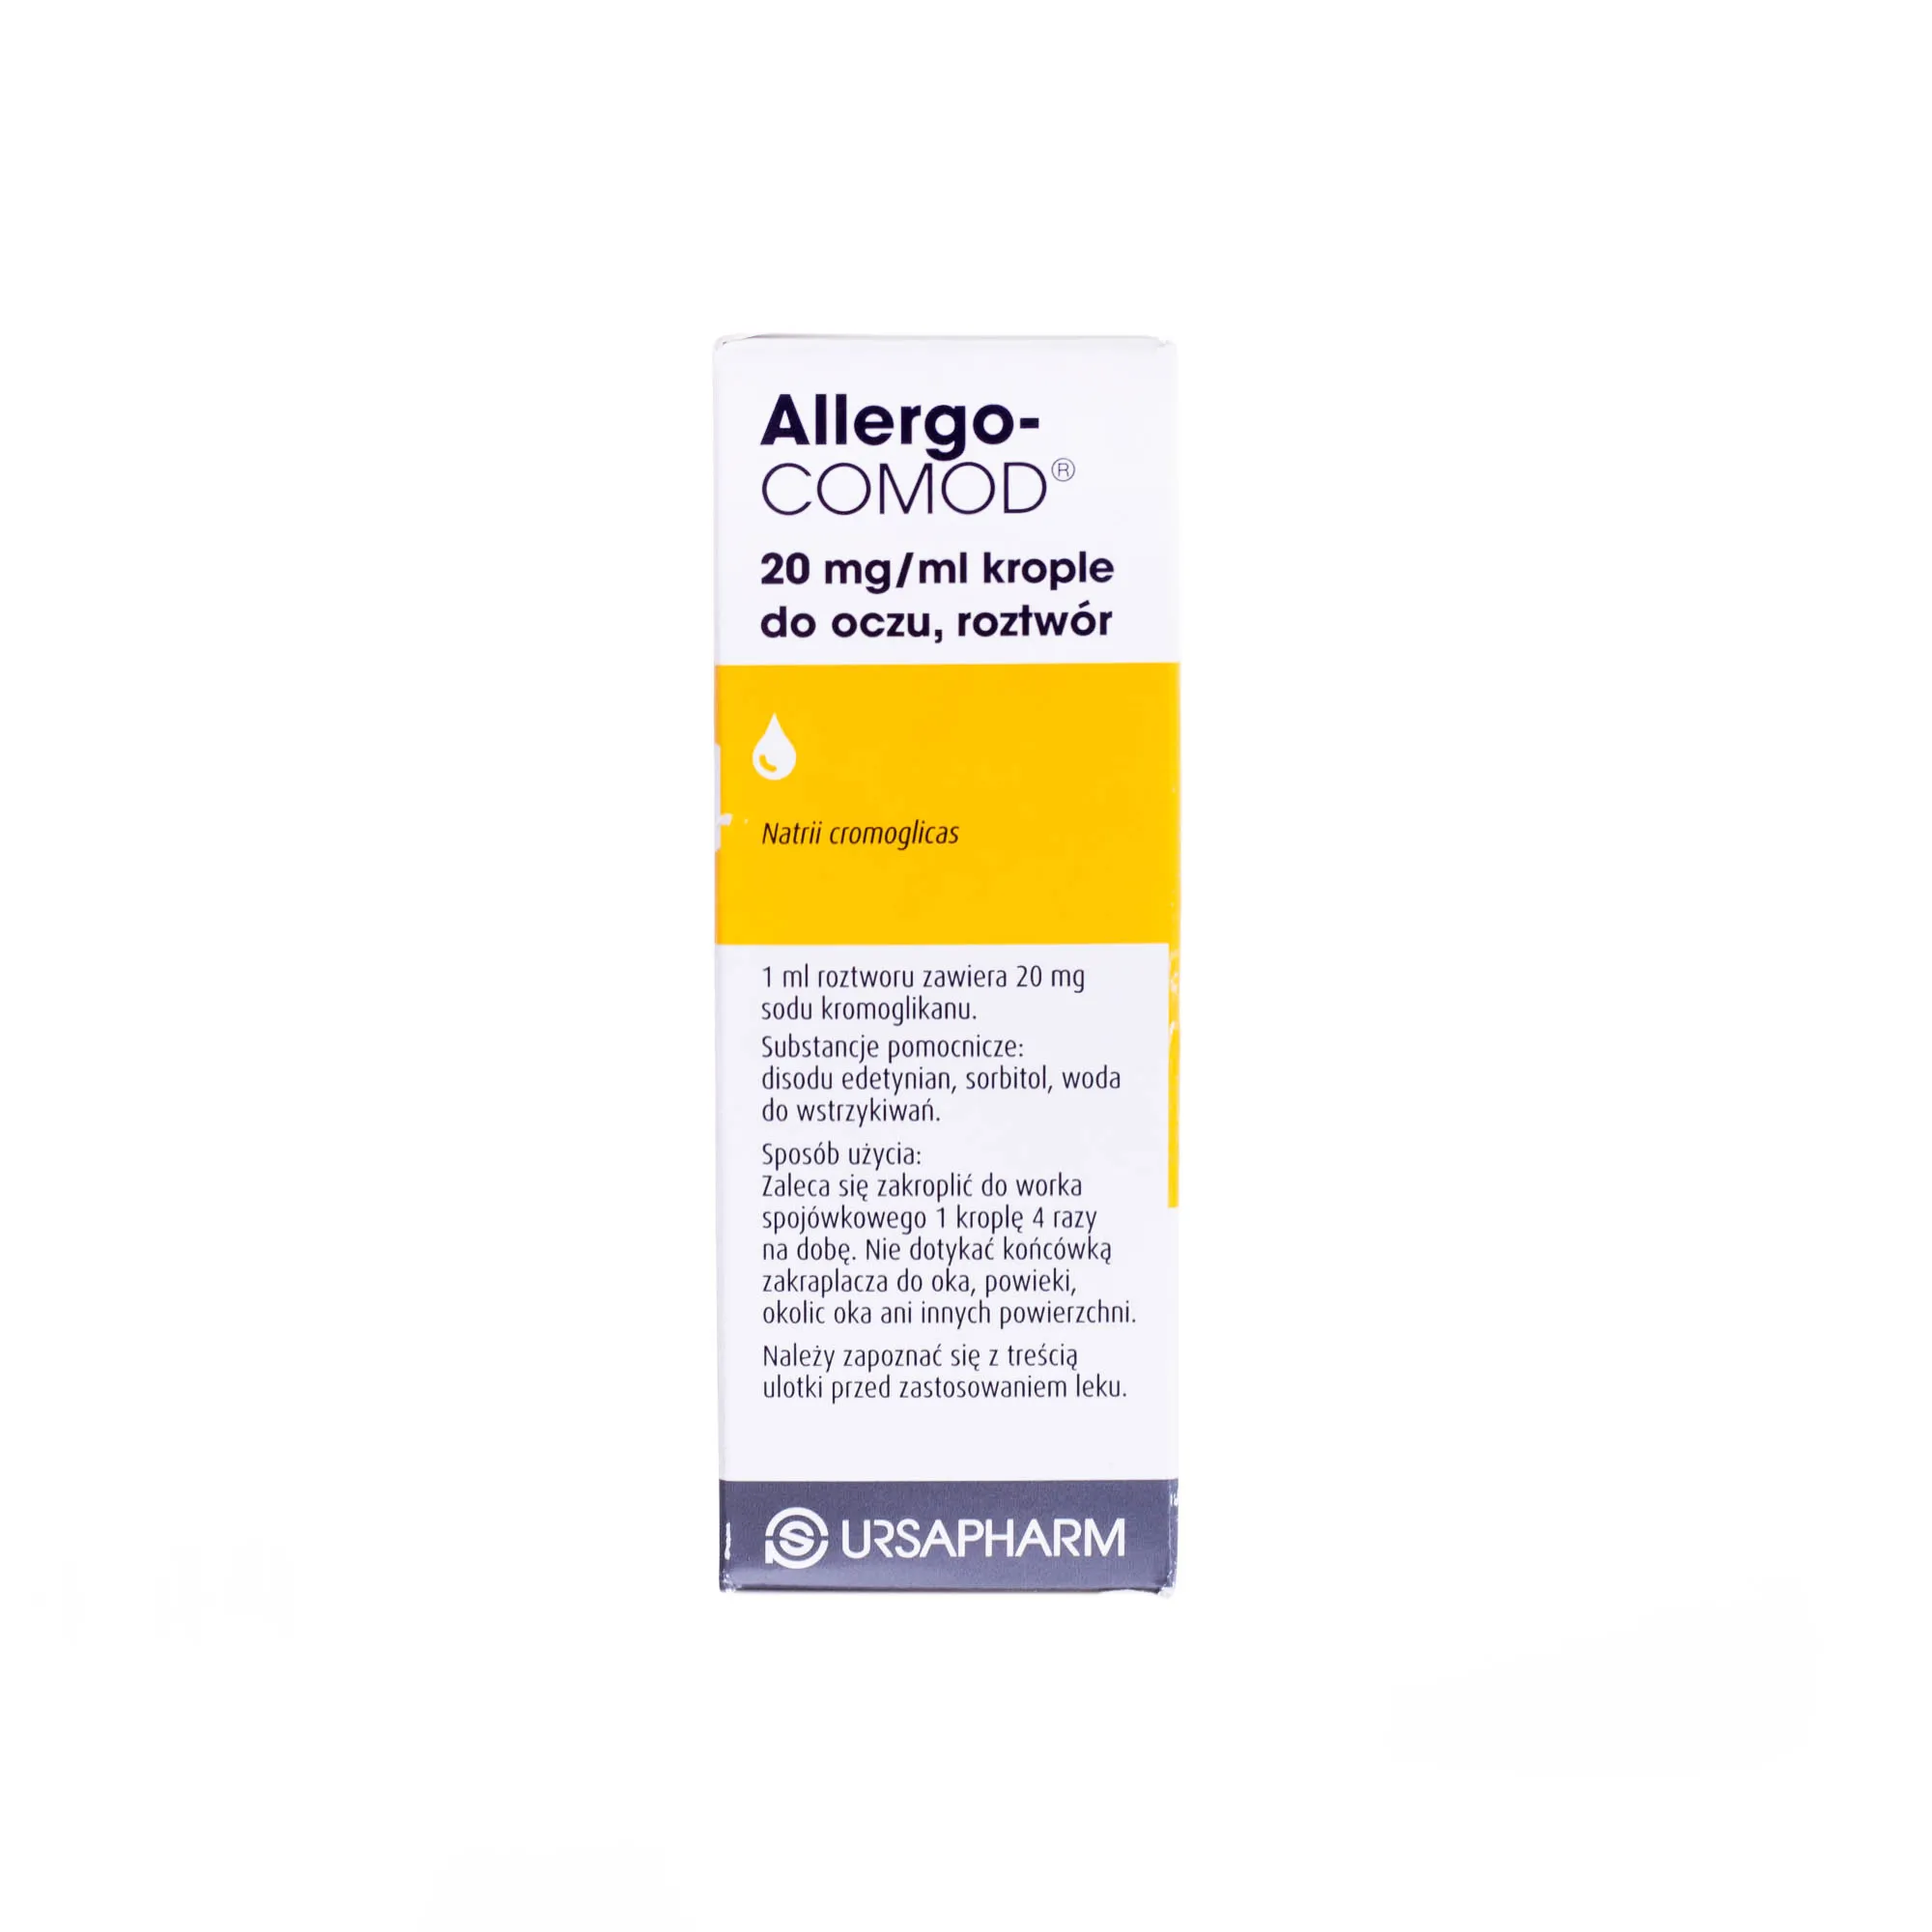 Allergo-COMOD 20 mg/ml krople do oczu, roztwór, 10 ml Podanie do oka 